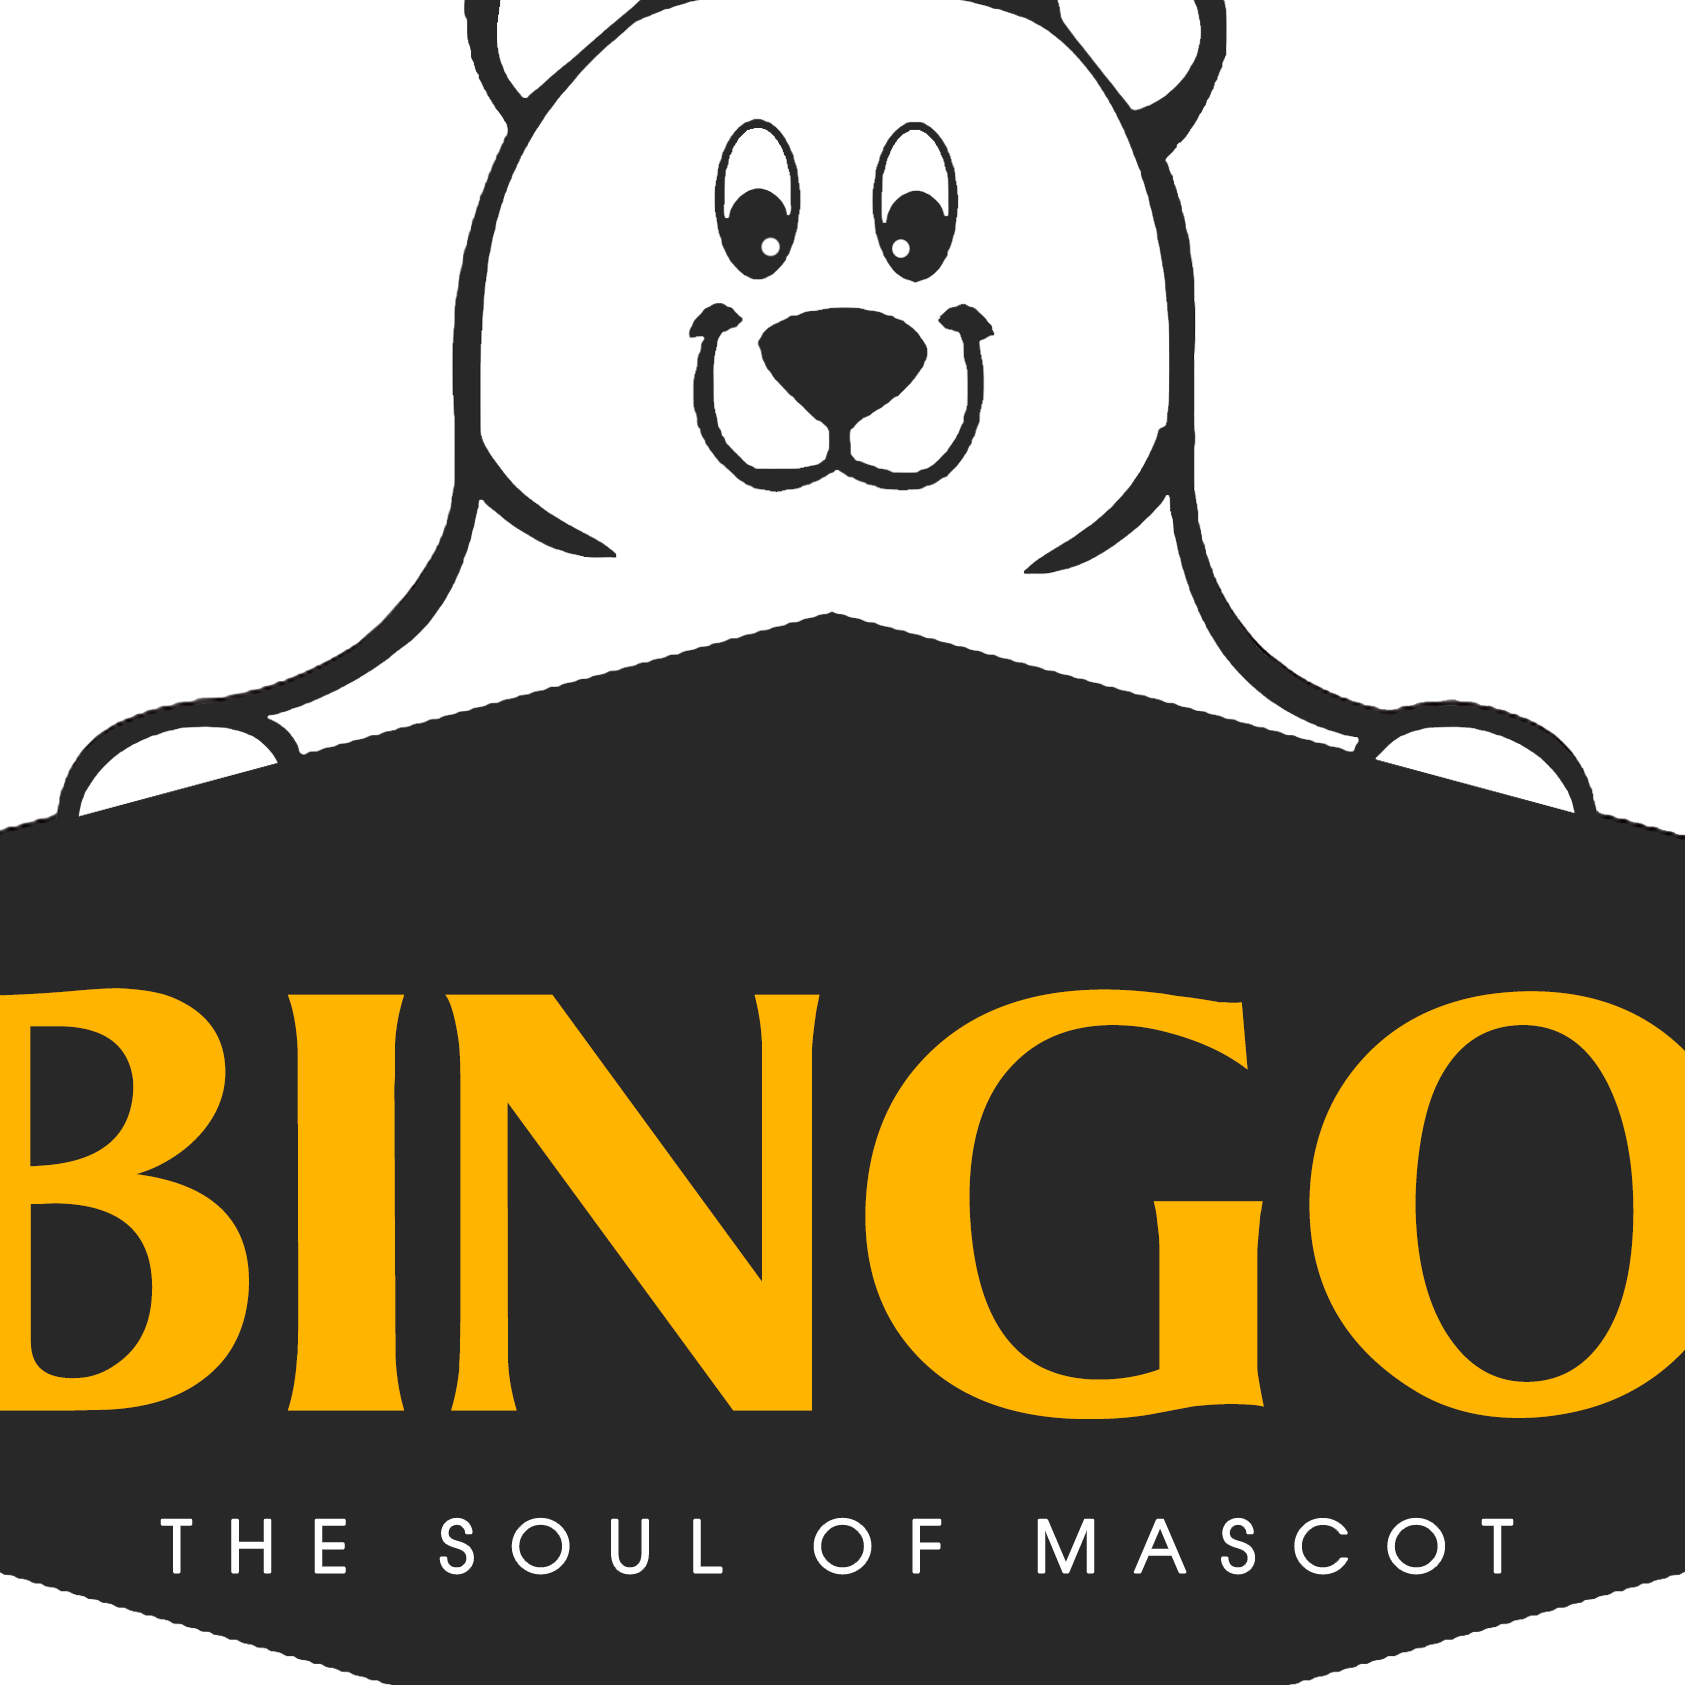 Mascot Bingo